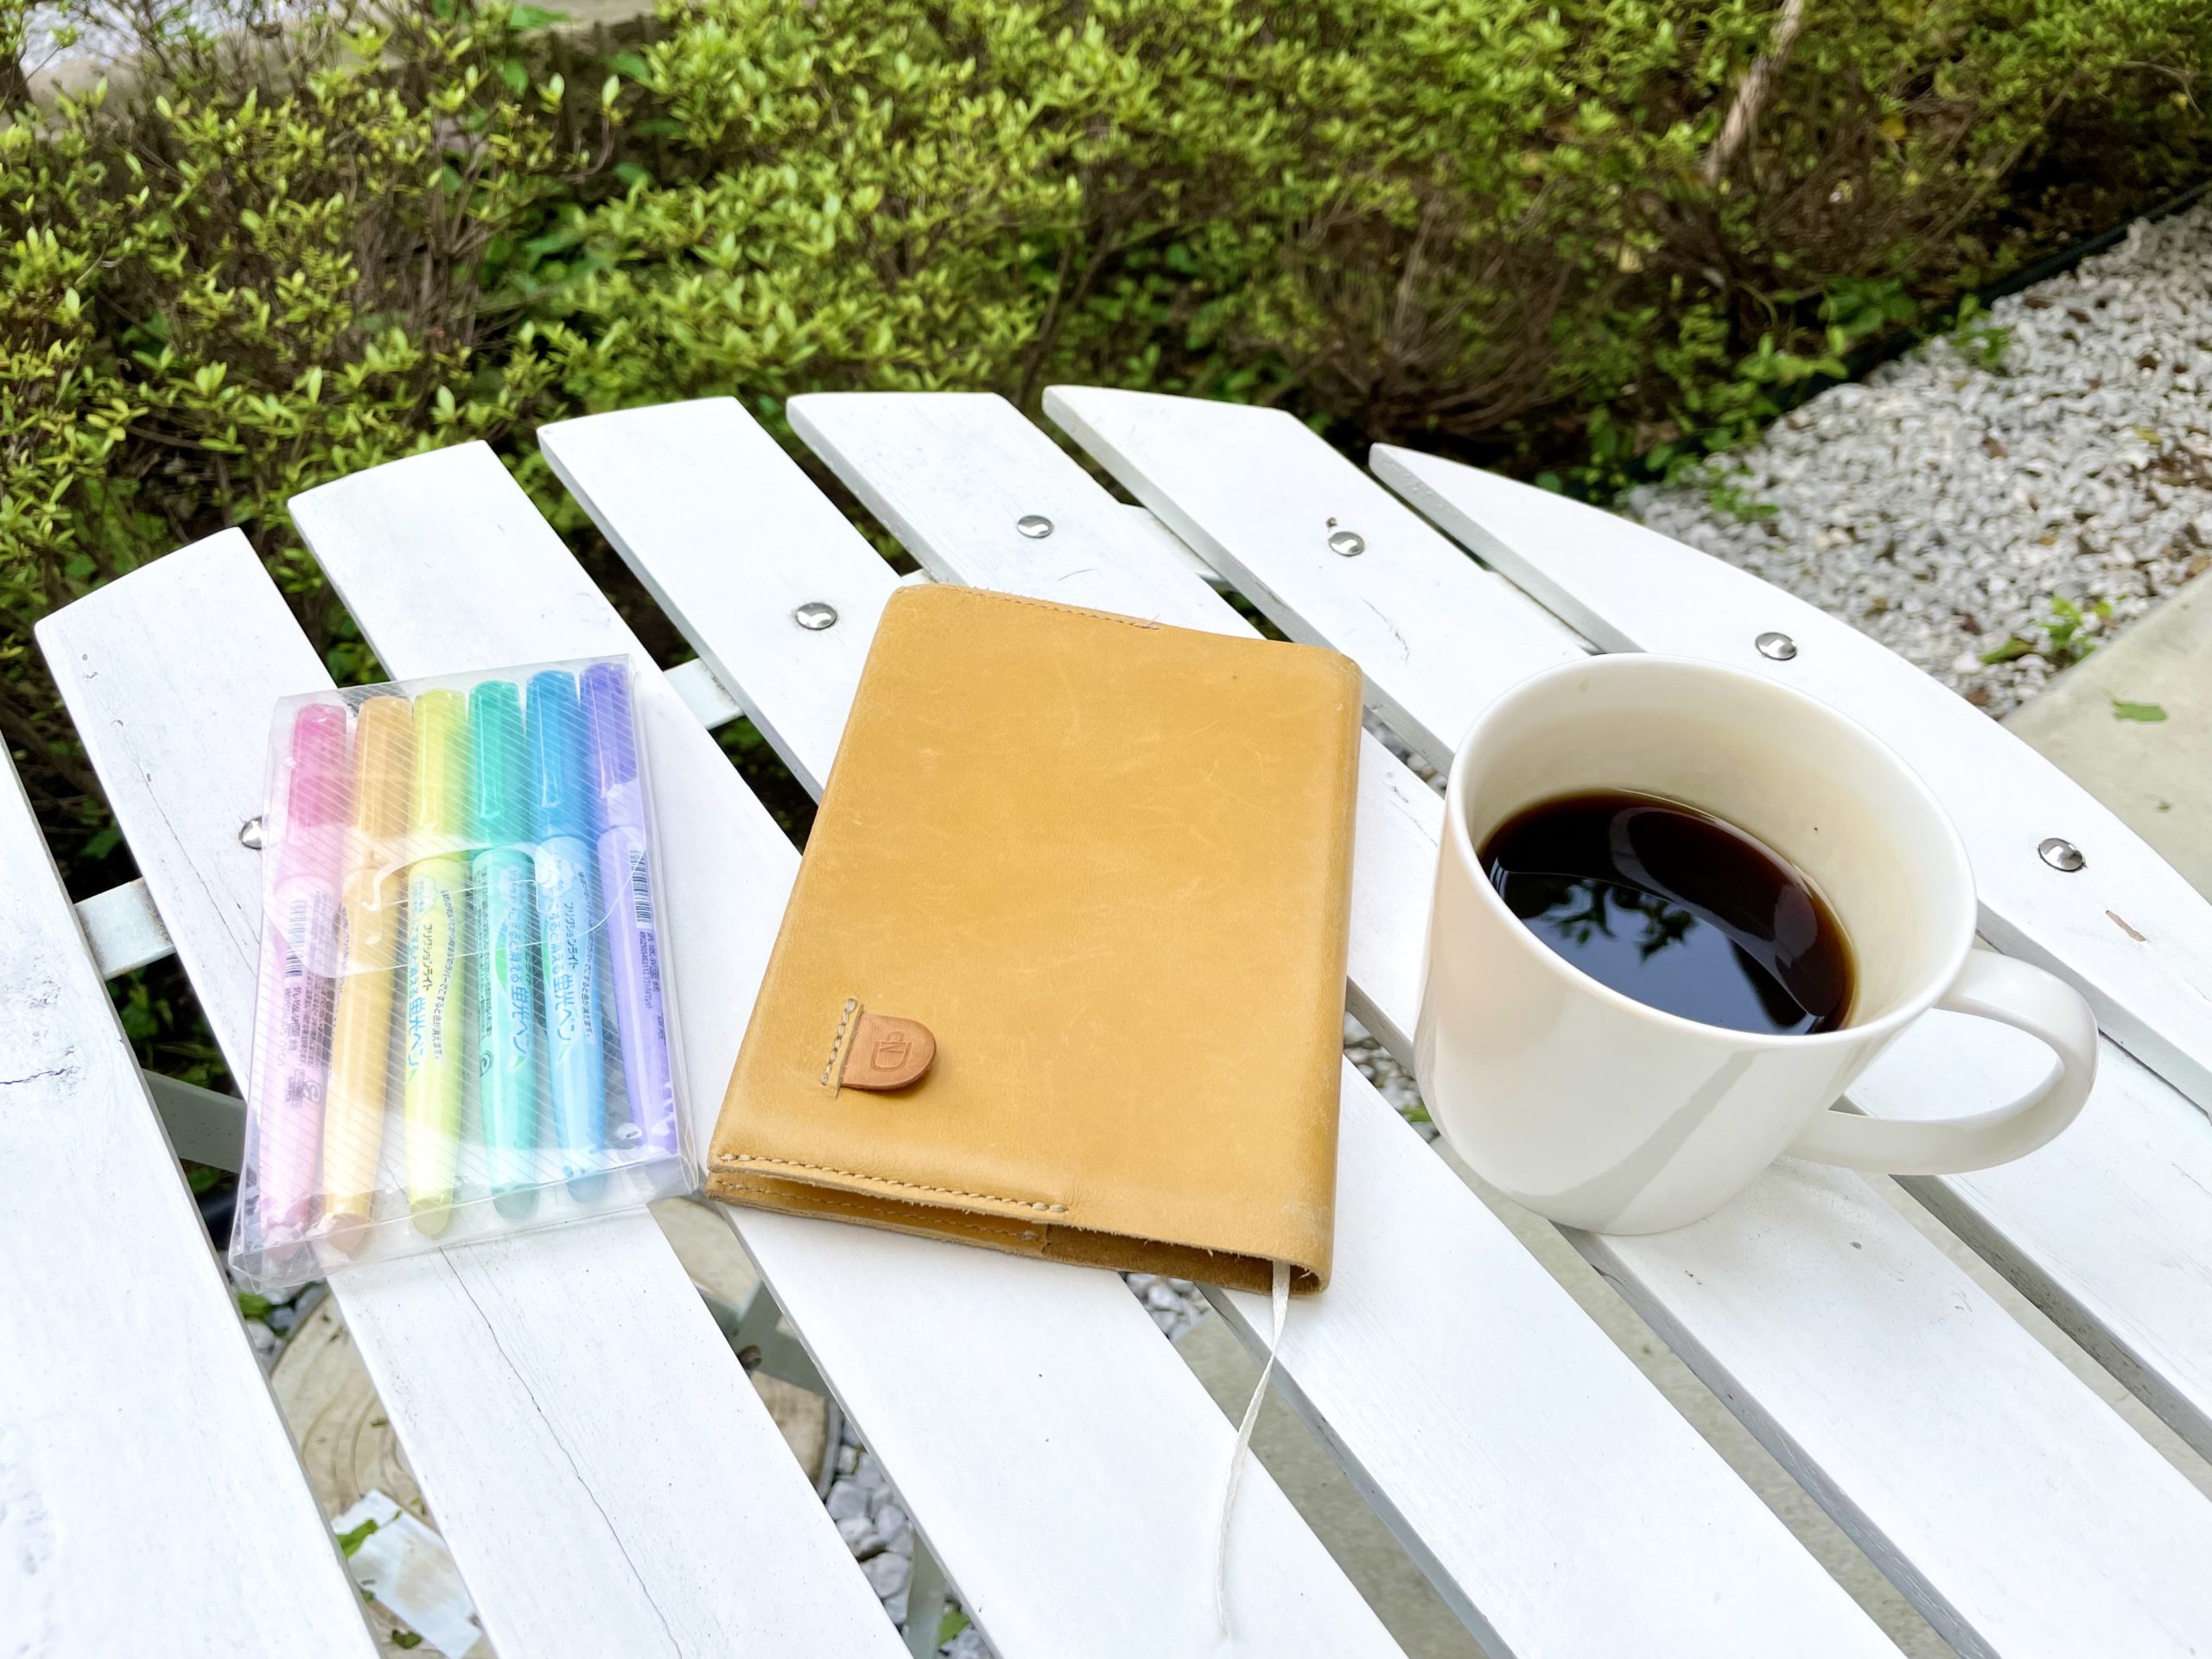 ガーデンテーブルにコーヒーと手帳、色とりどりのペンが並んでいる写真。奥には緑が茂っていて、柔らかい光が差している。